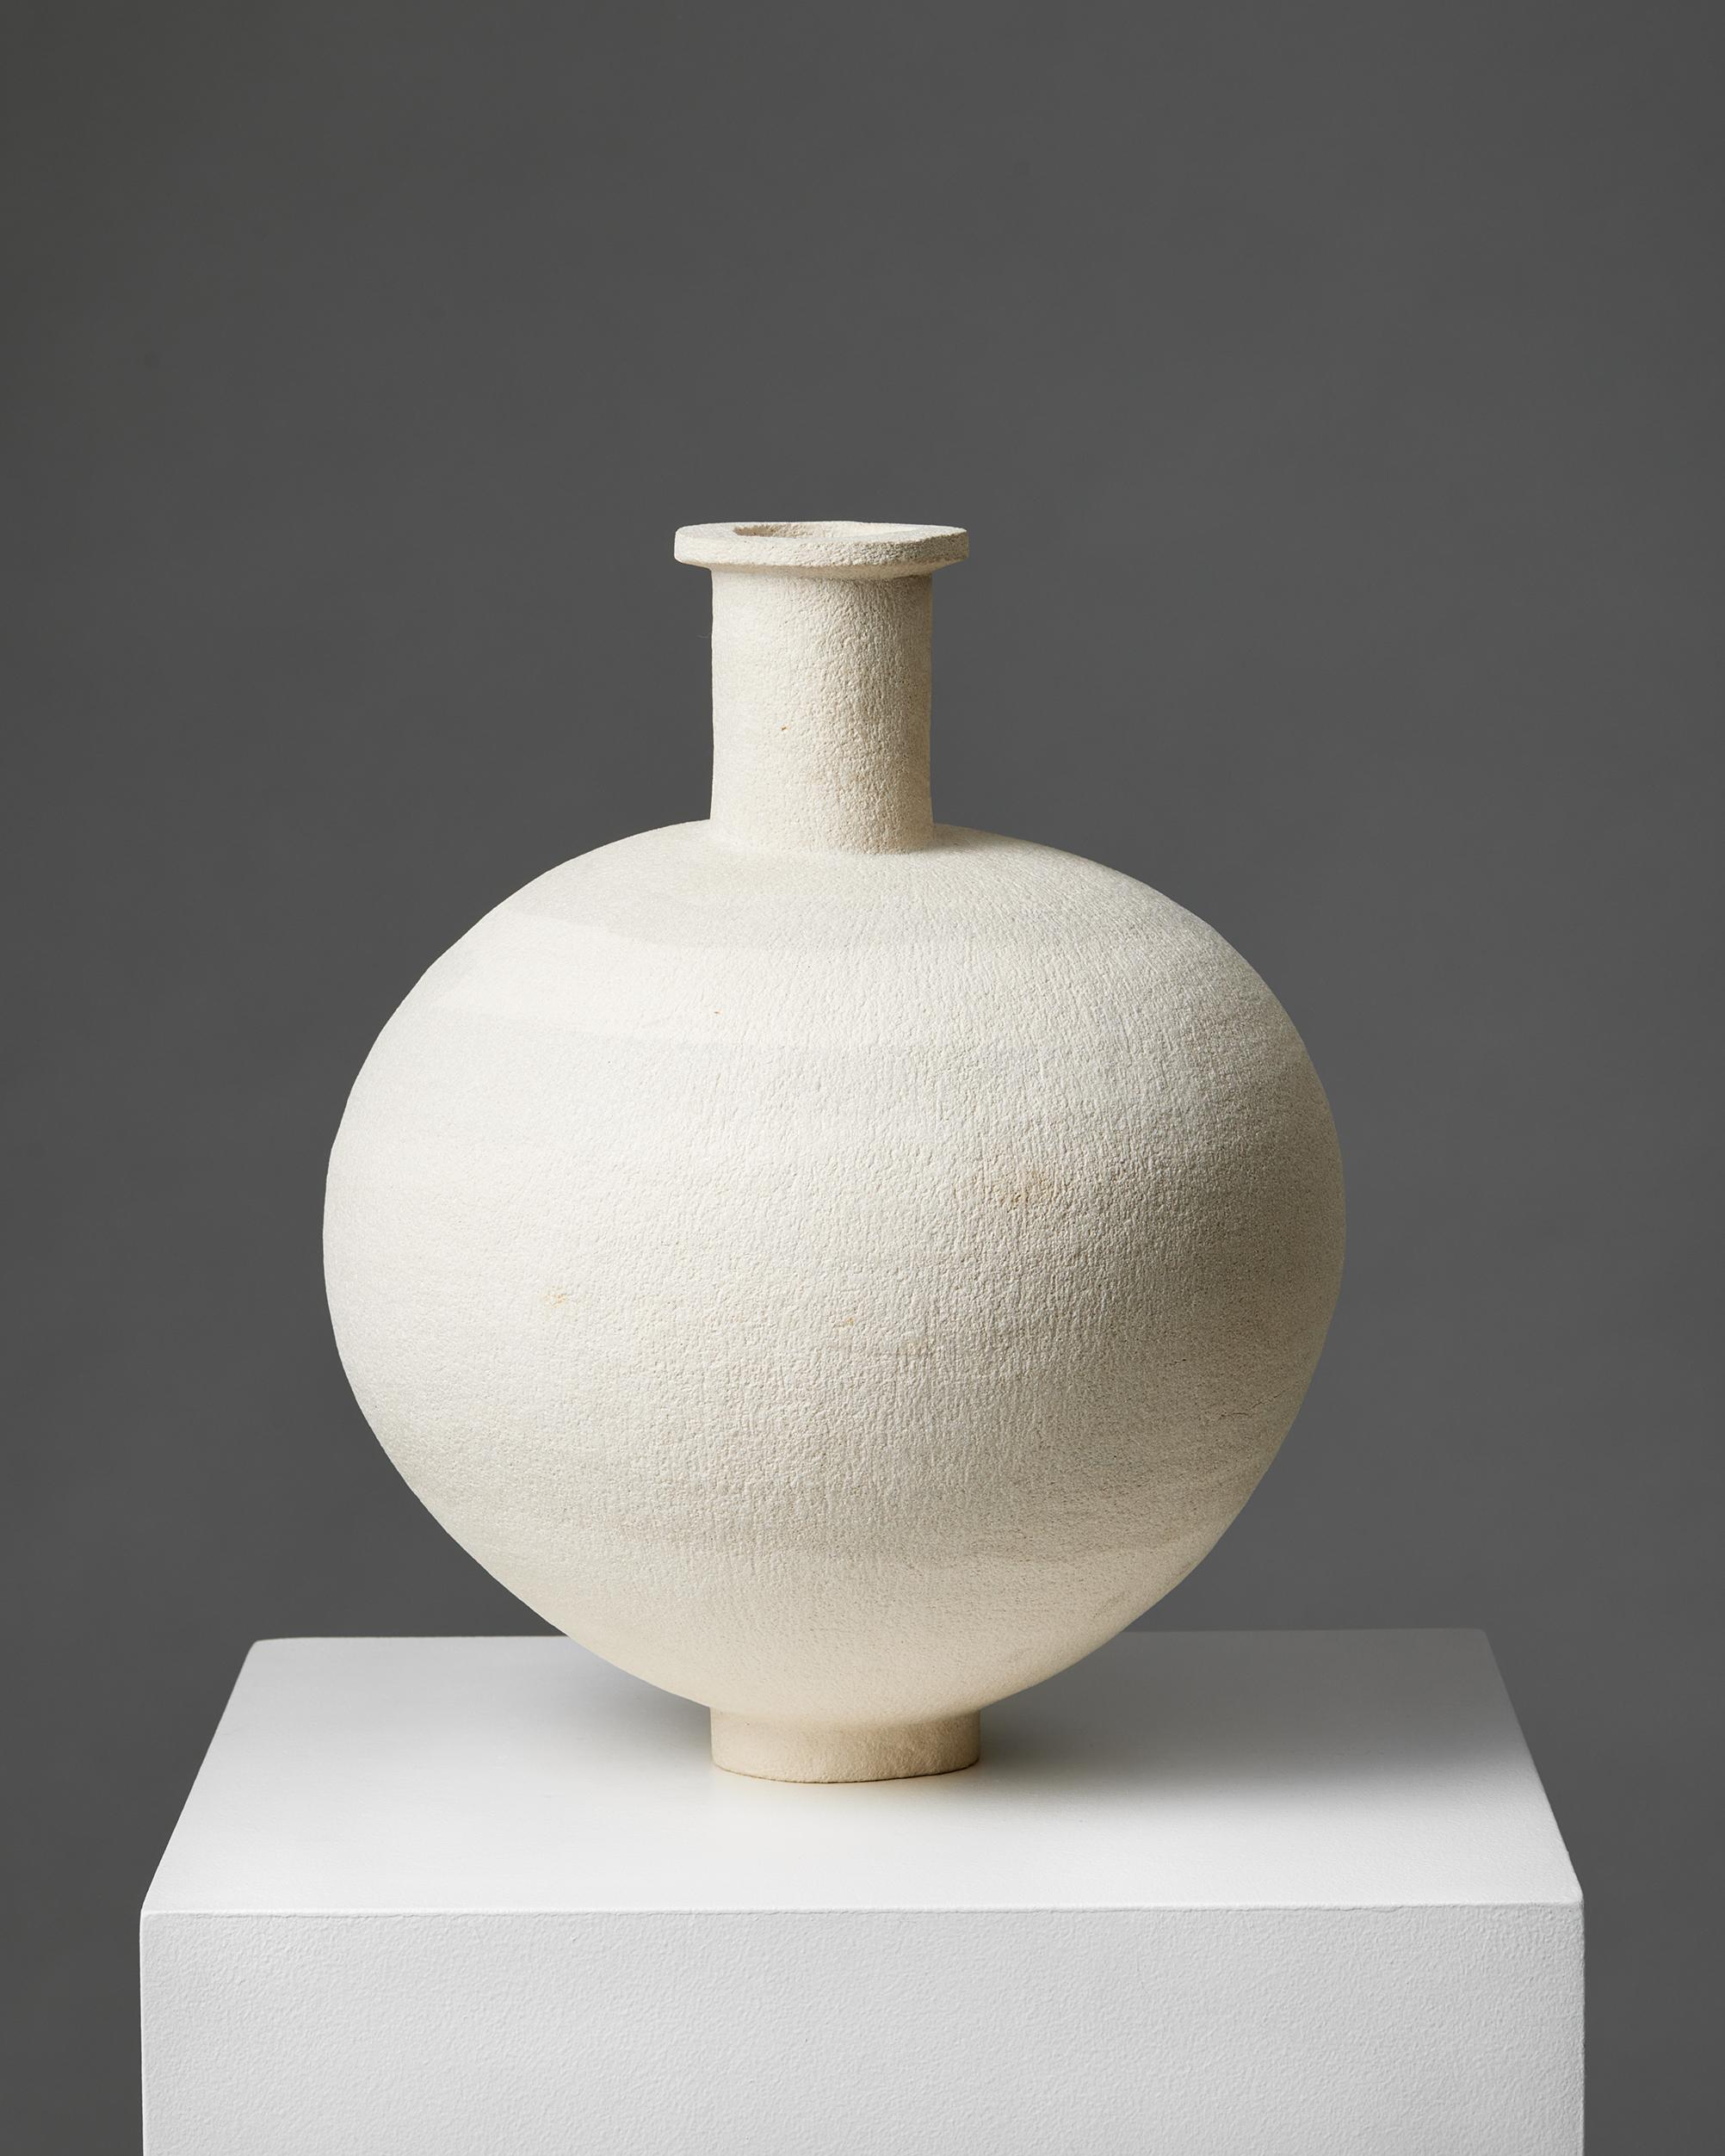 Vase, anonyme, Suède, années 1950
Signé.

Grès.

H : 36 cm / 14''
Diamètre : 26 cm / 10 1/4''.